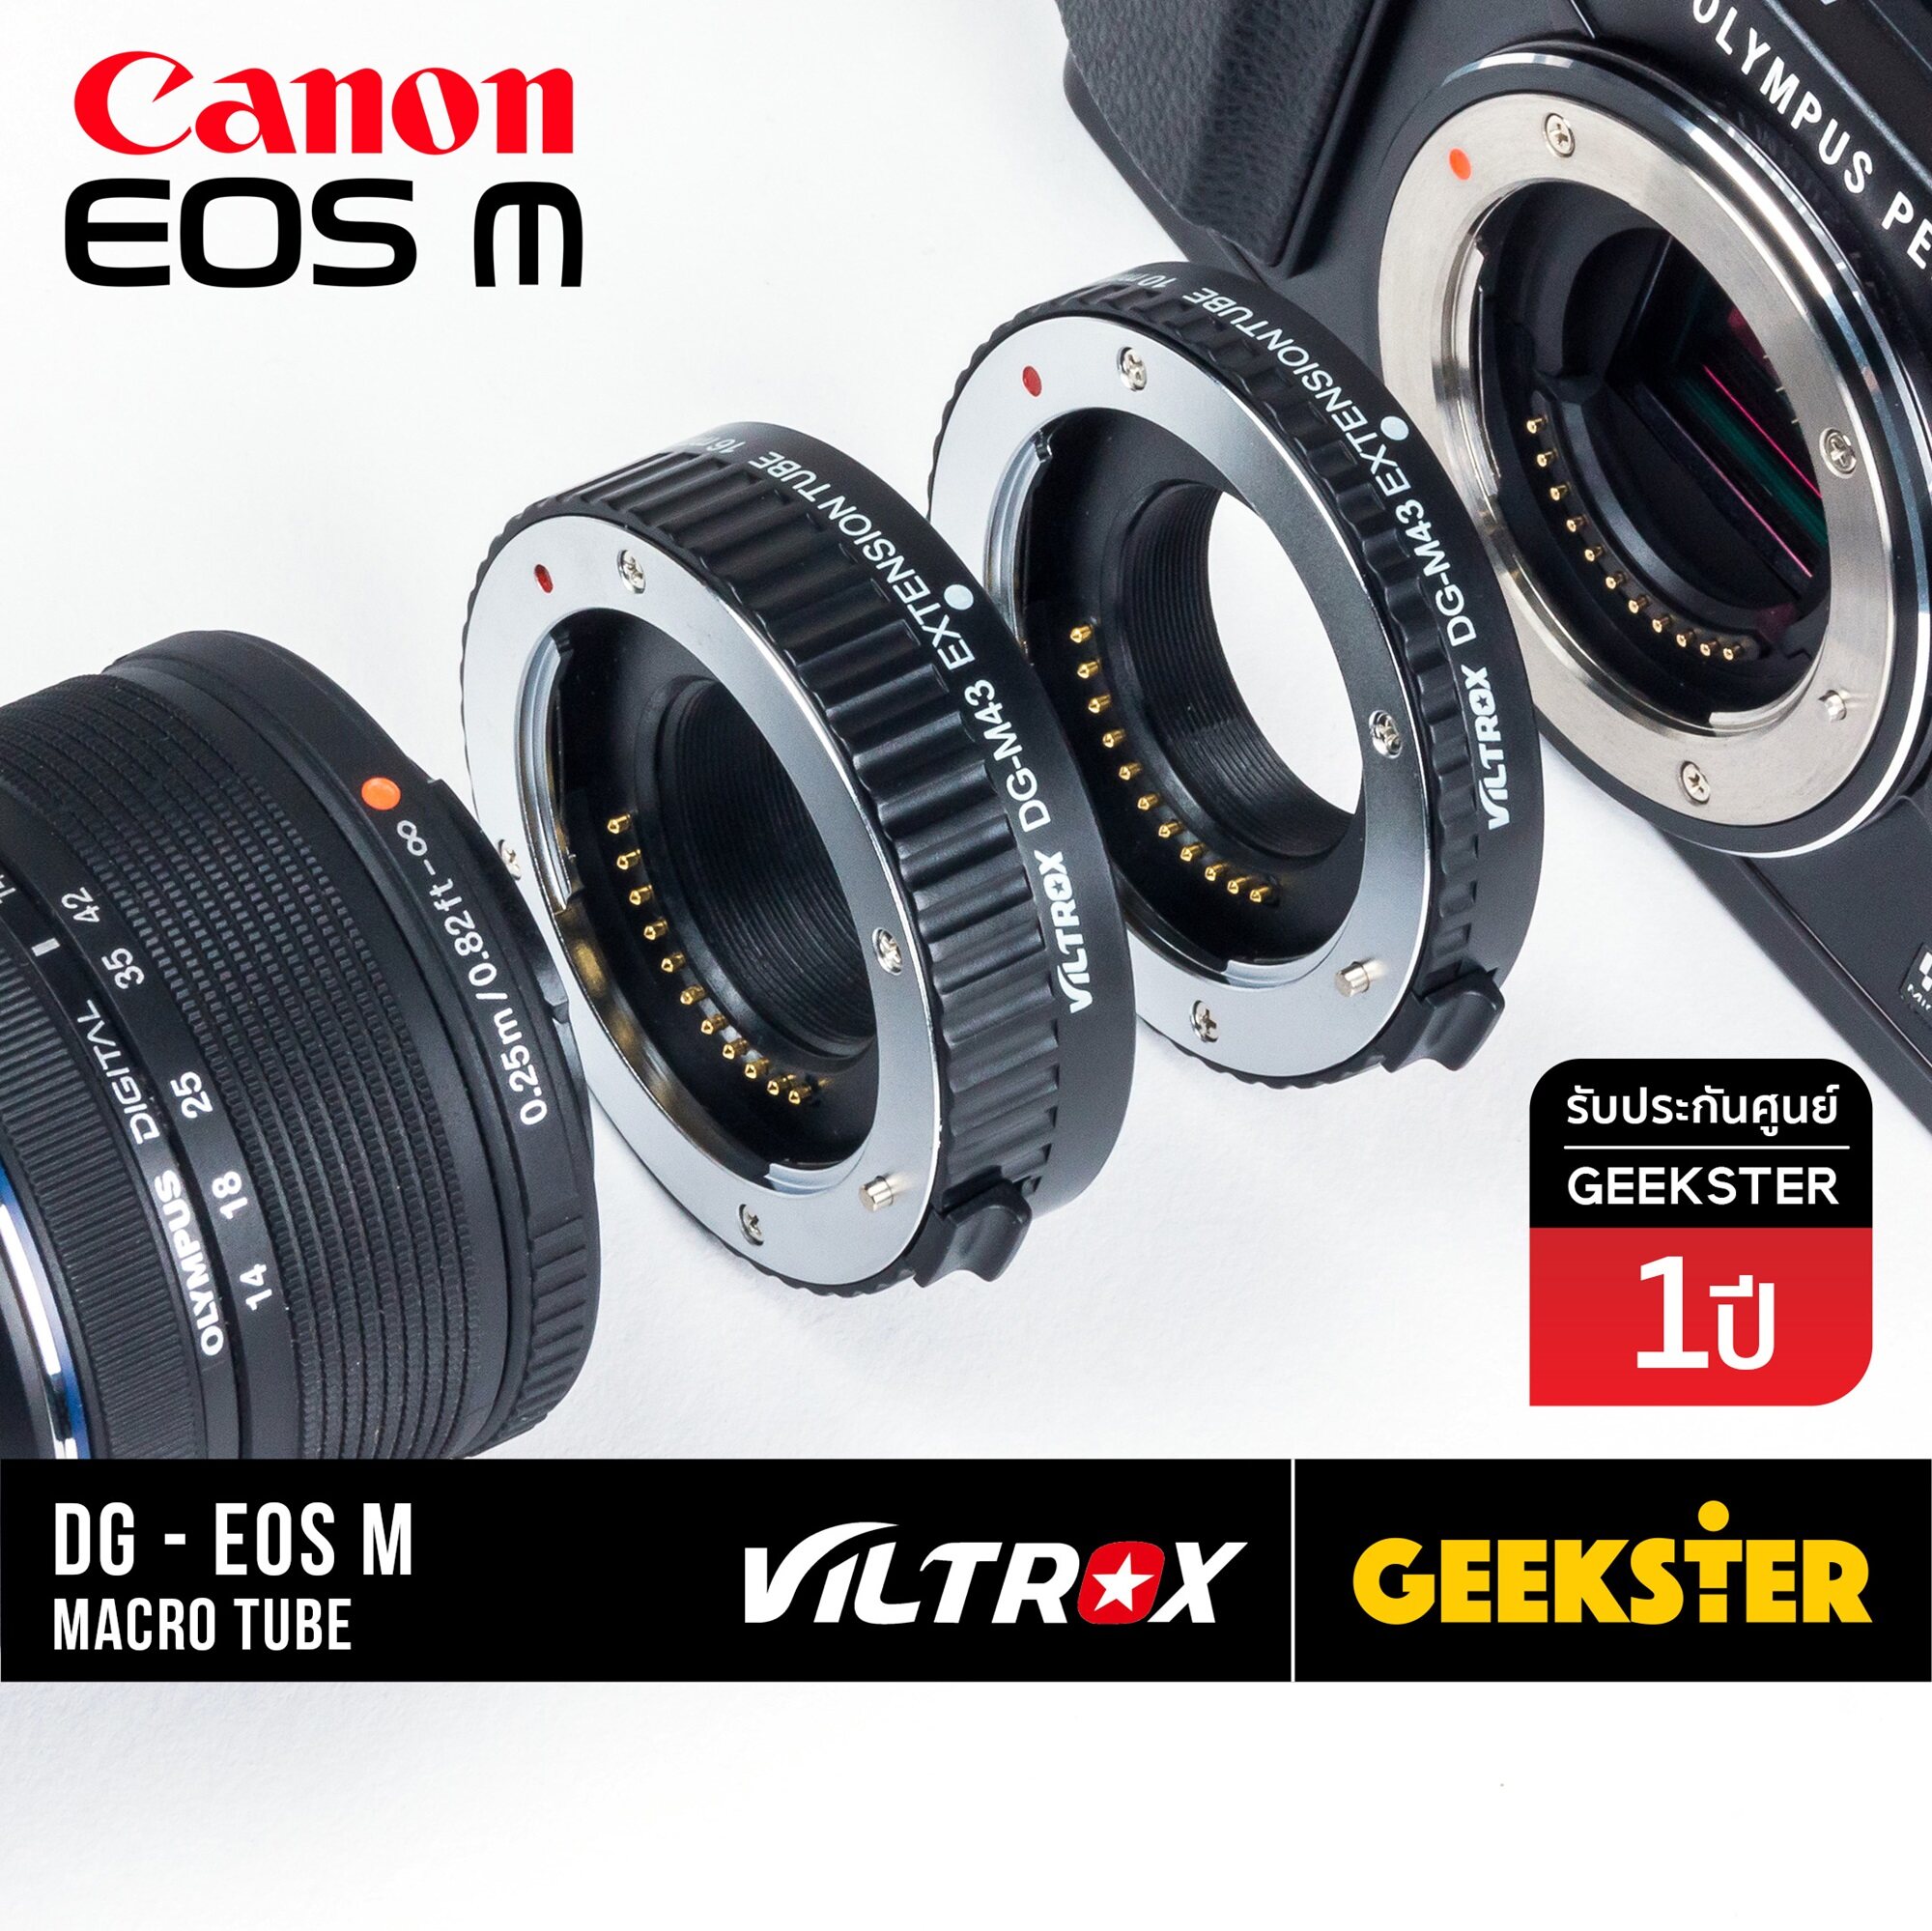 ท่อมาโคร Viltrox Macro Extension Tube สำหรับกล้อง Canon EOS M ทุกรุ่น ( สำหรับถ่า่ยภาพ มาโคร ) ( เพื่อช่วยให้ถ่ายภาพระยะได้ใกล้ขึ้น ) ( ออโต้ โฟกัส ) ( DG-EOS M ) ( Geekster )